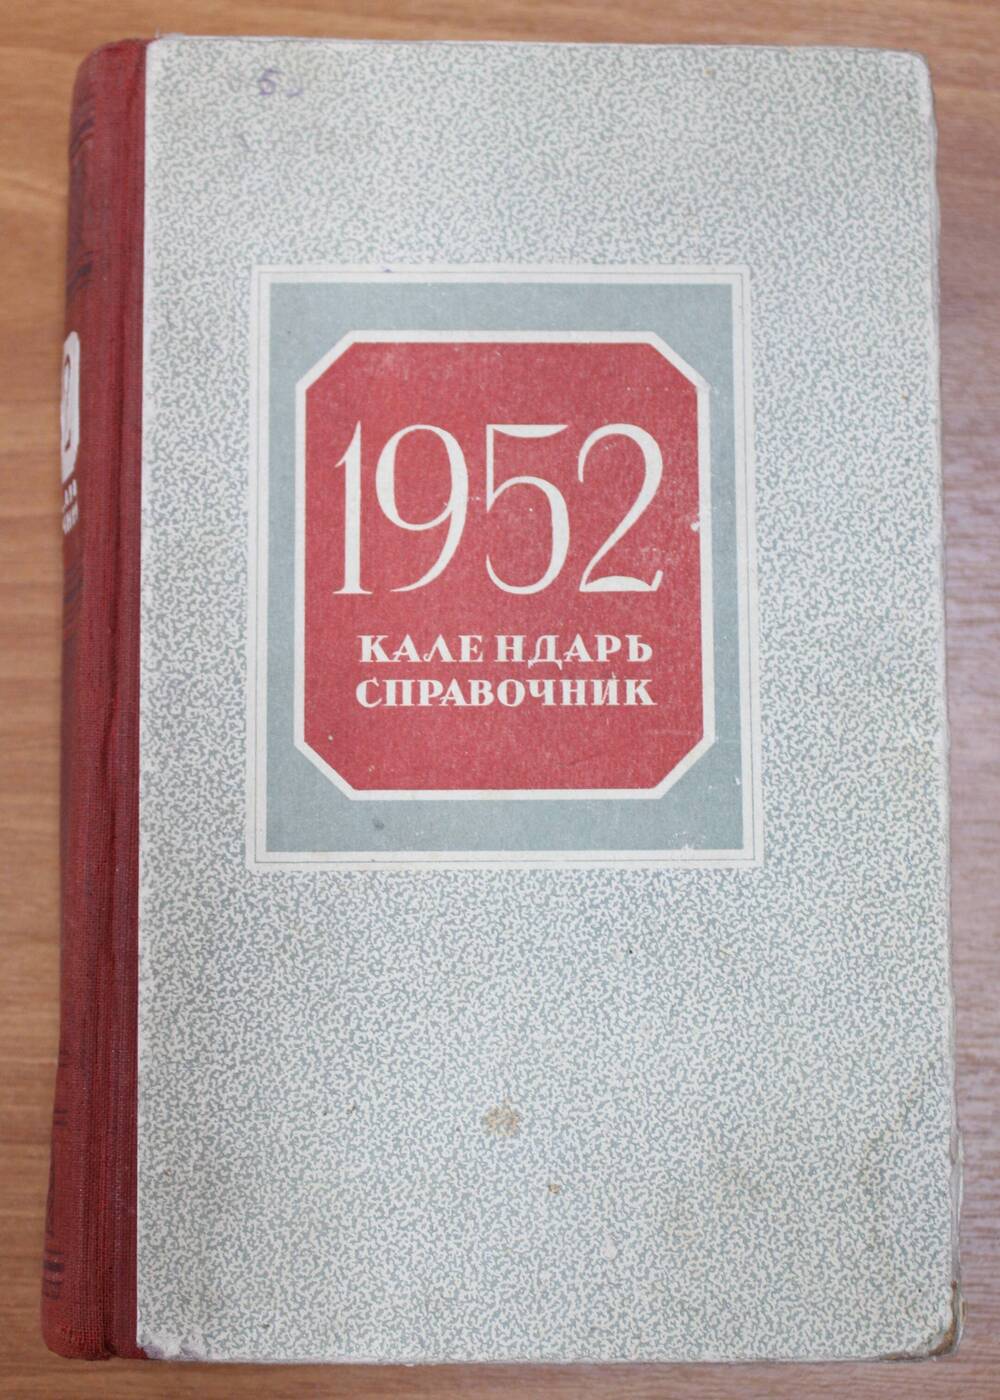 Книга. Календарь справочник 1952 г.